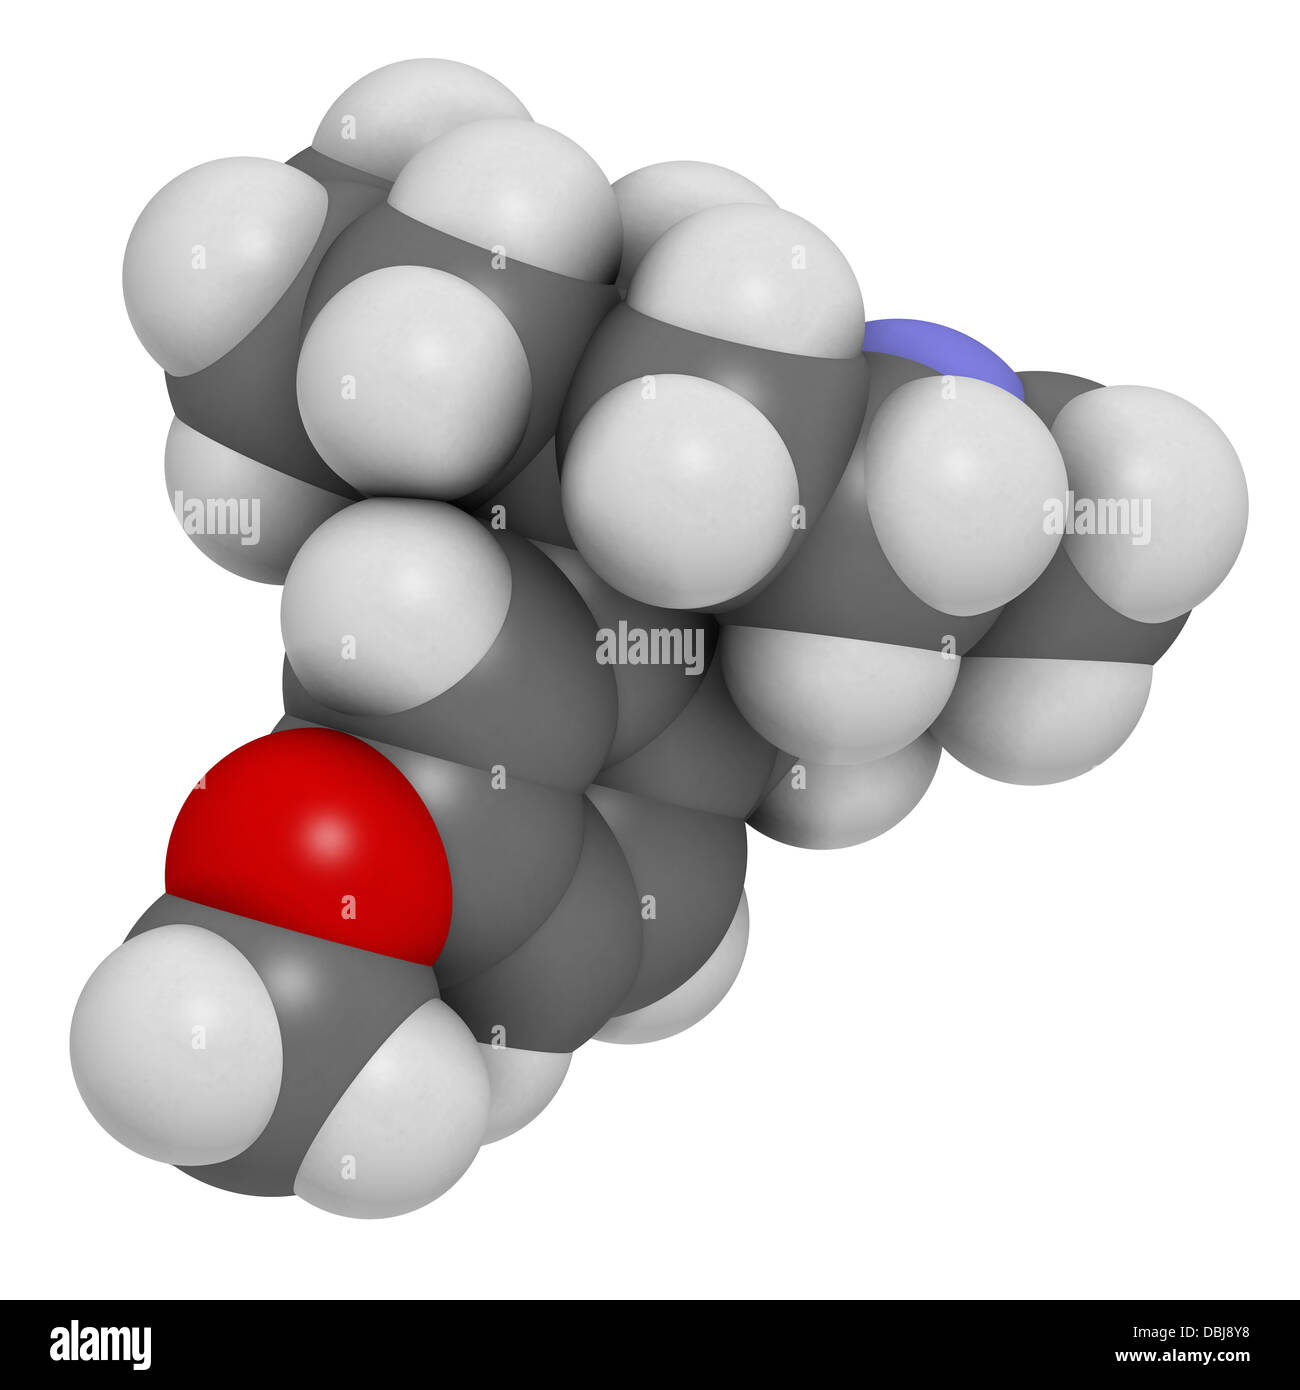 Destrometorfano soppressore della tosse (farmaci antitosse), struttura chimica. Gli atomi sono rappresentati come sfere. Foto Stock